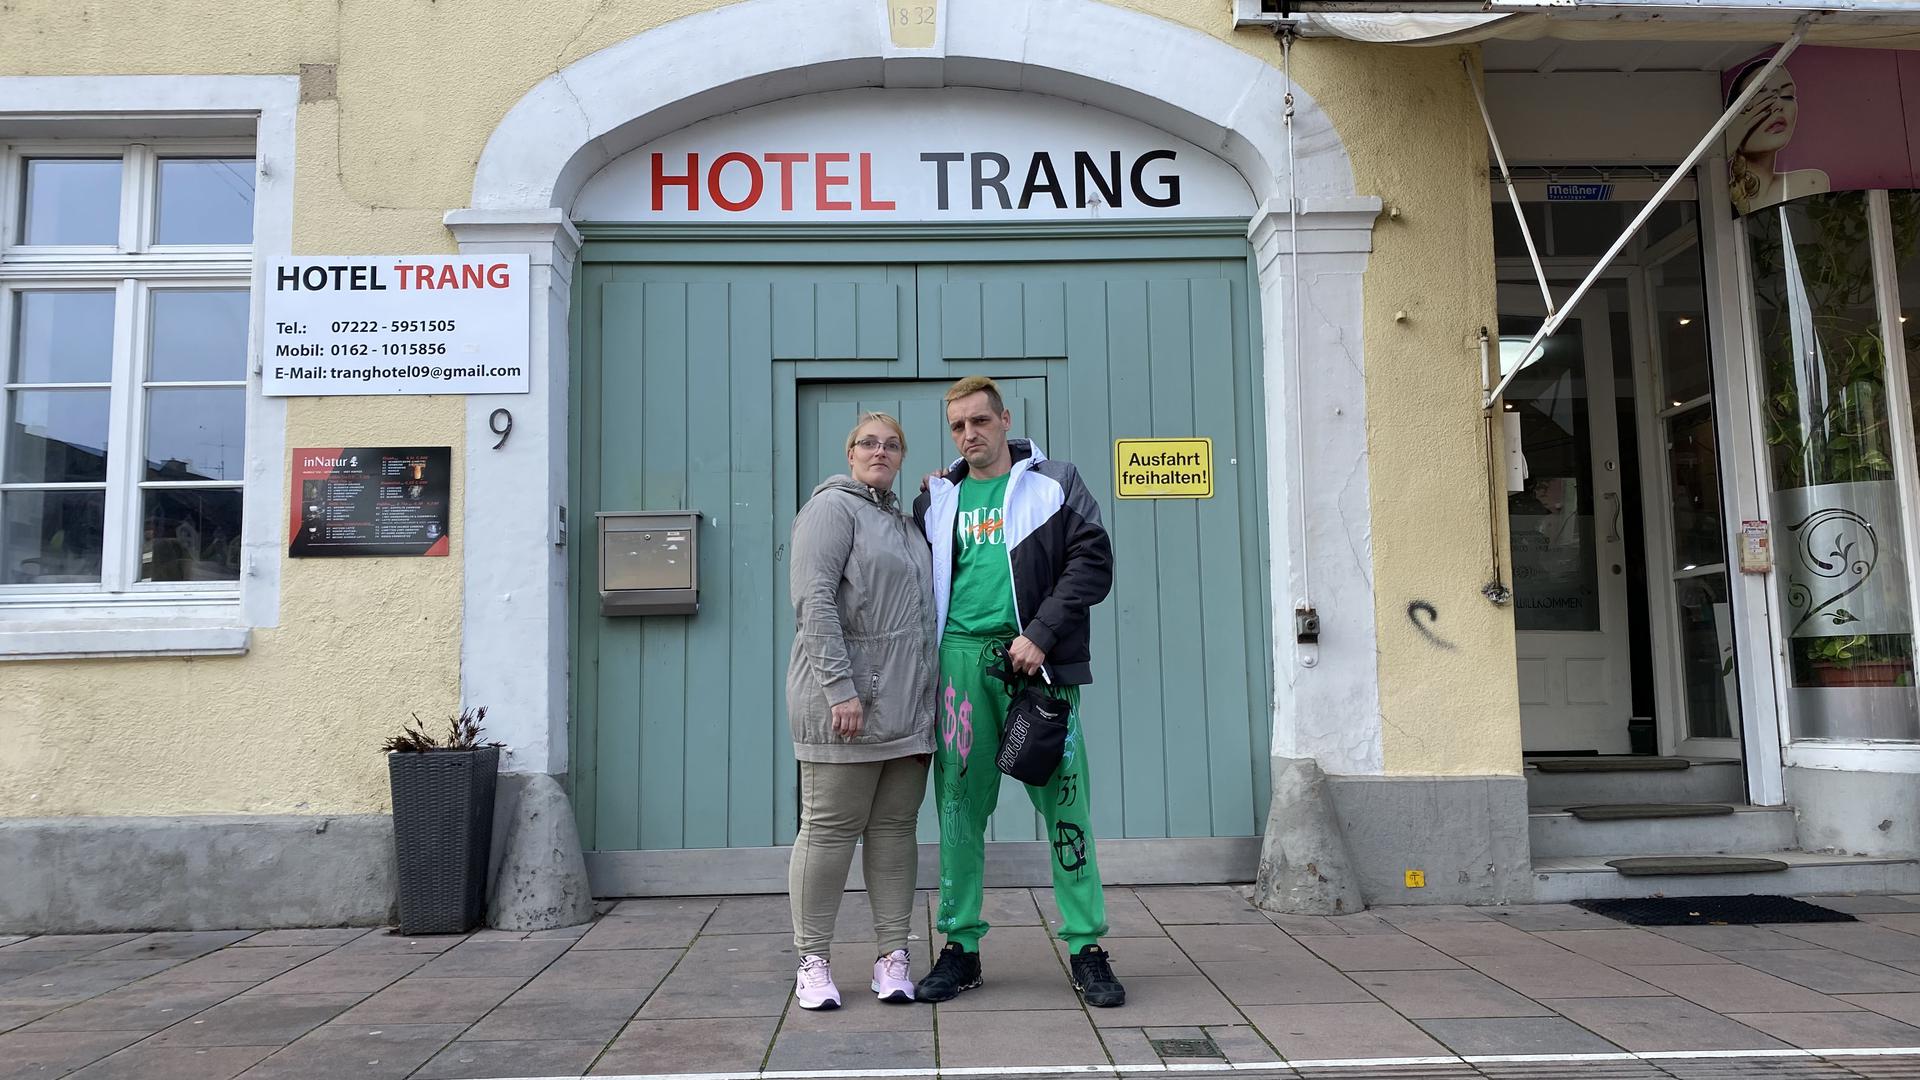 Unterschlupf im Hotel: Alexa Meier und Sven Horn tragen Kleidung, mit der sie sich notdürftig ausgestattet haben. Die Umhängetasche ist das einzige, was nach dem brand von ihrem Besitz übrig ist.